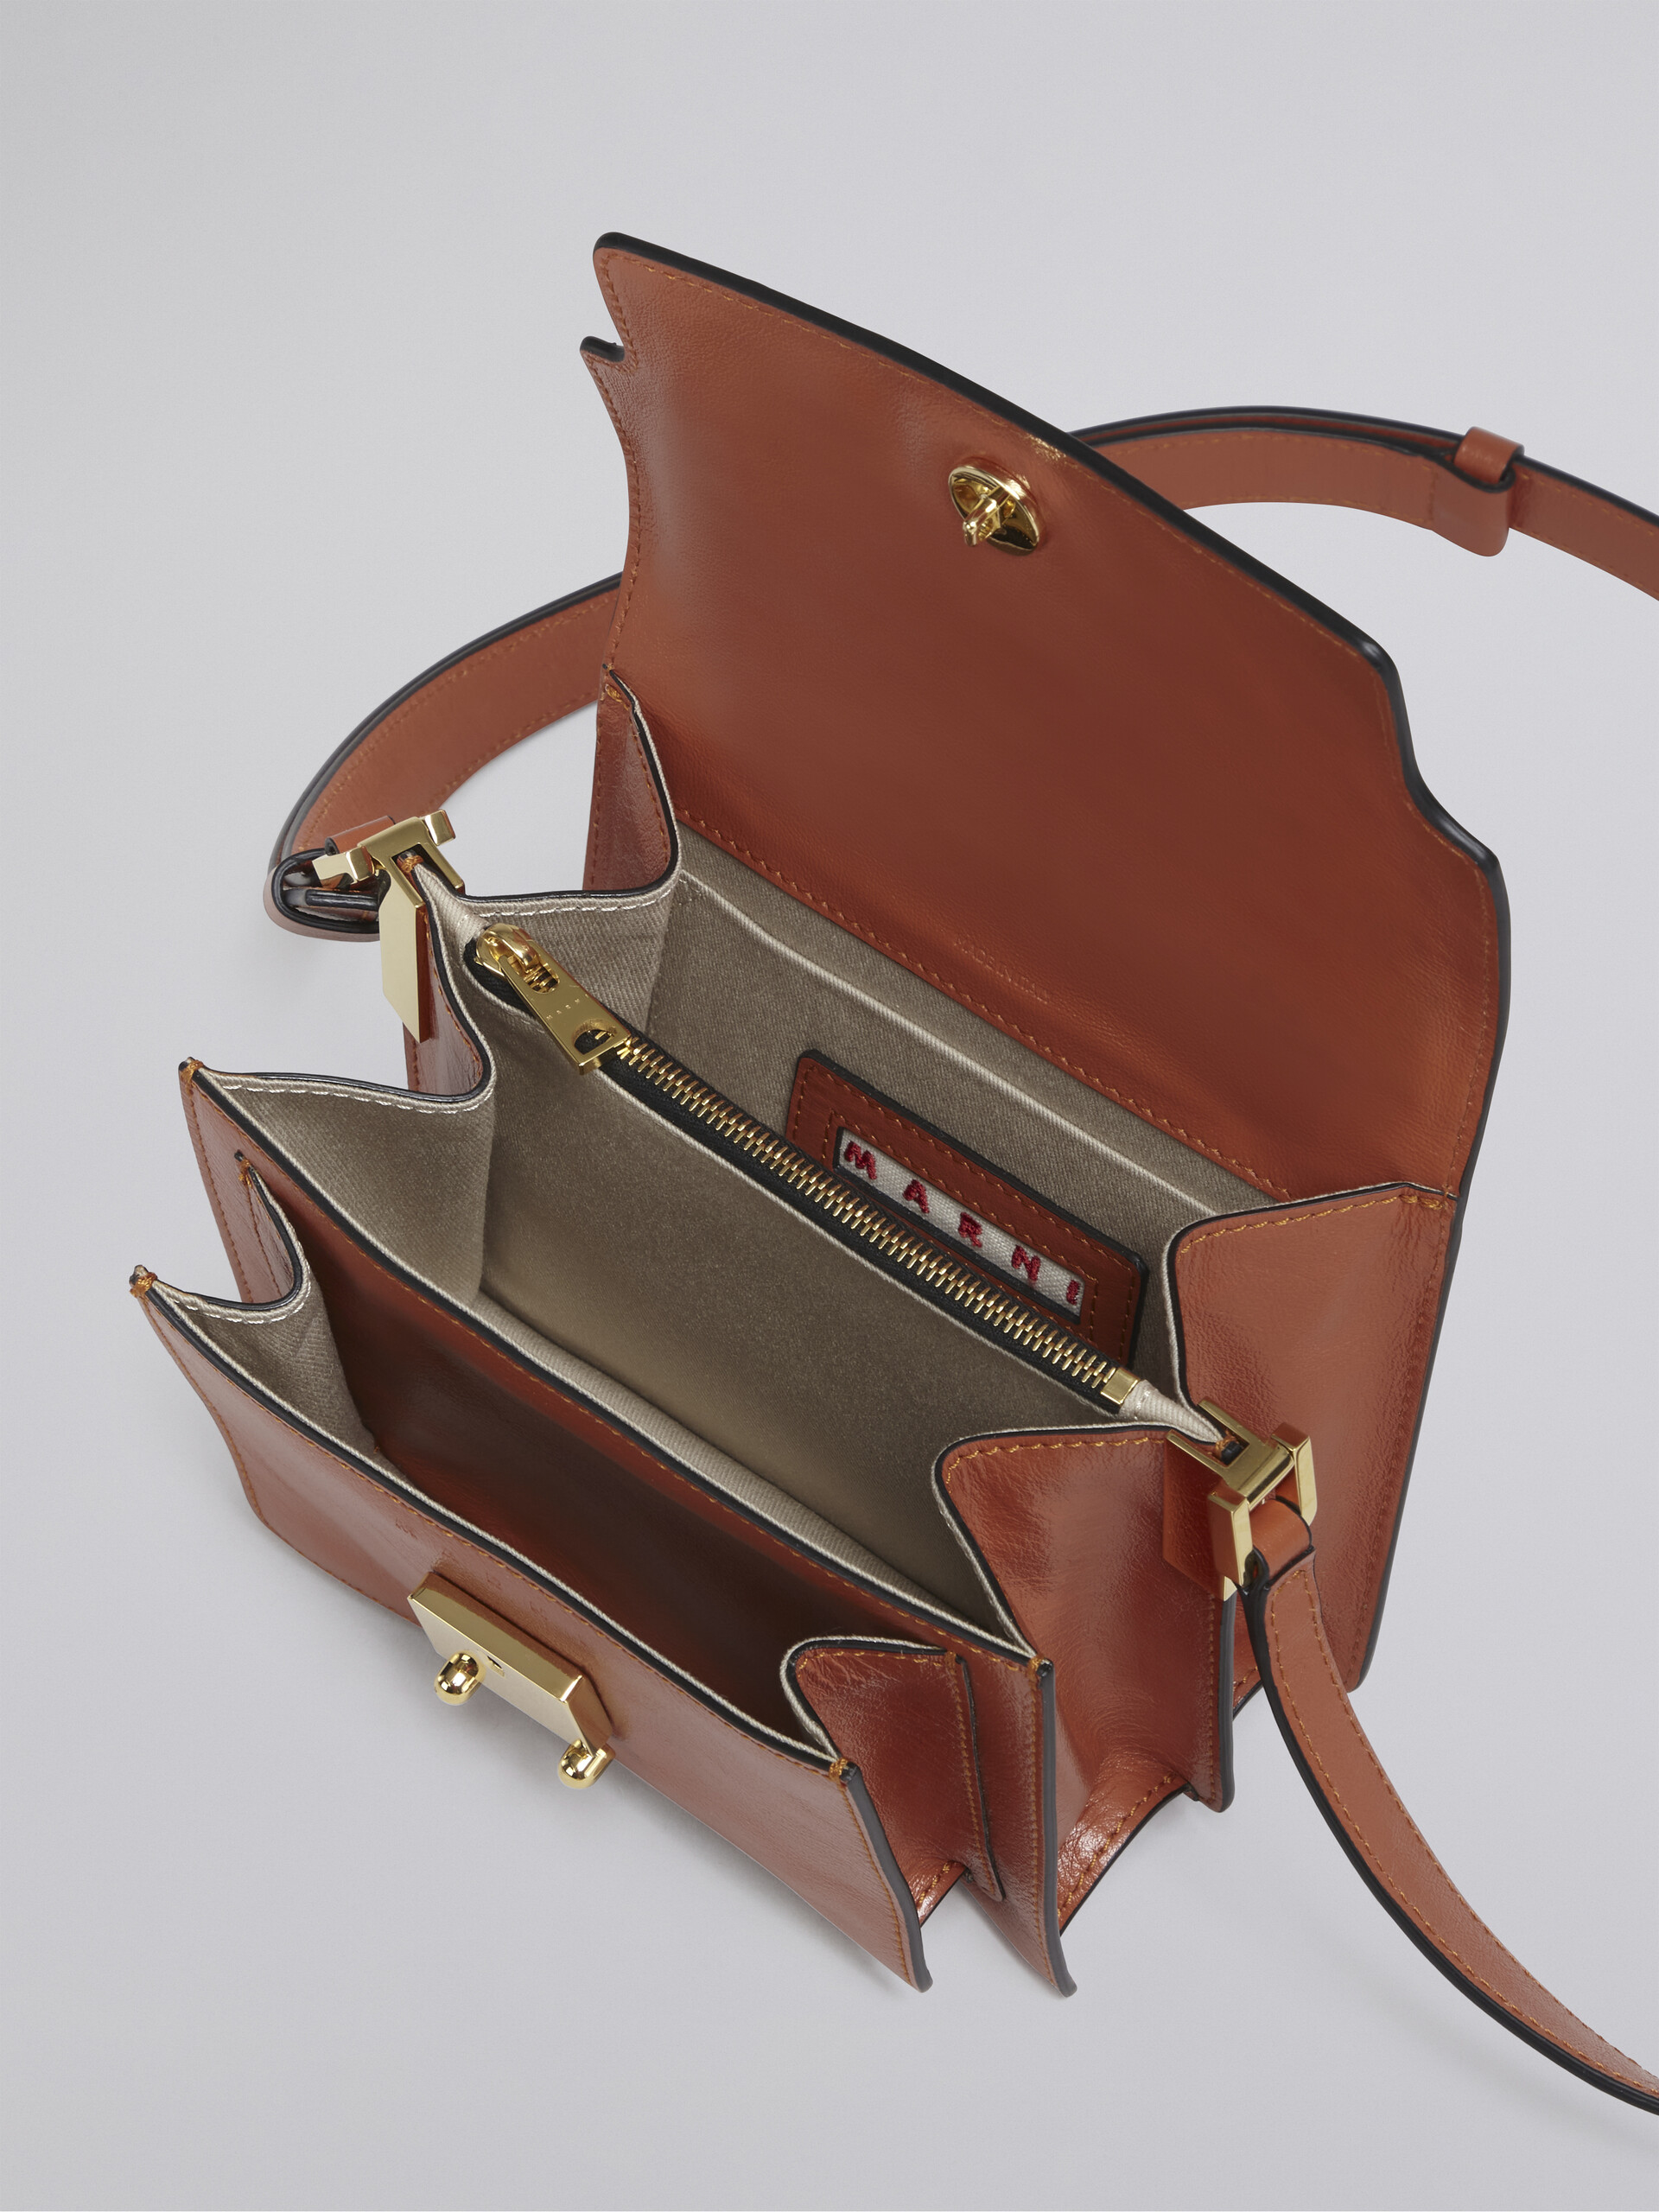 TRUNK SOFT mini bag in brown leather - Shoulder Bag - Image 4